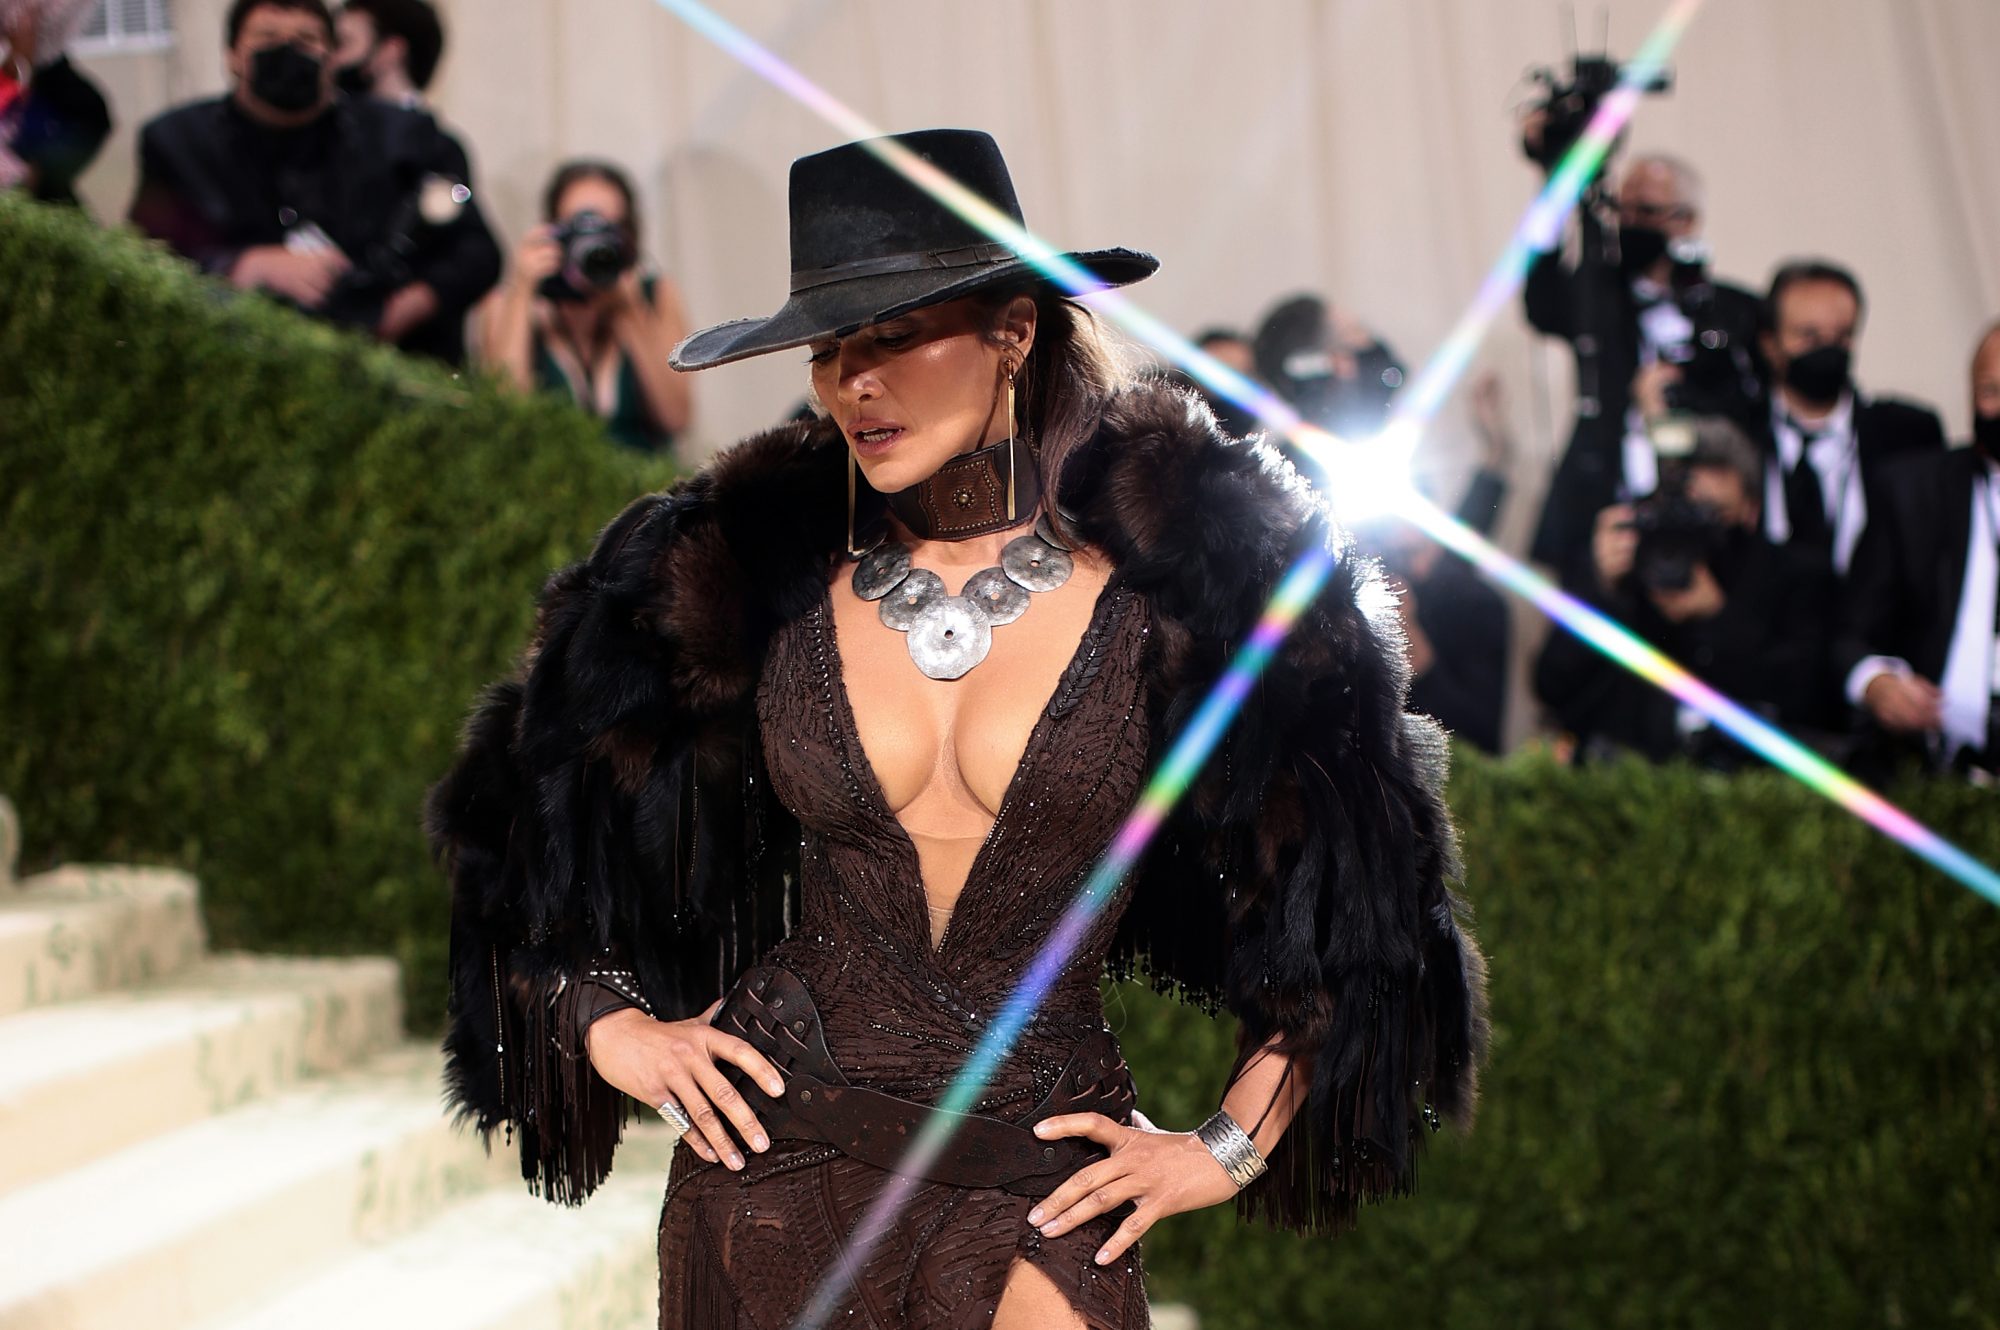 Η Jennifer Lopez φόρεσε την μεγαλύτερη τάση στα jeans. Αυτή που κάνει το κορμί να δείχνει super hot!